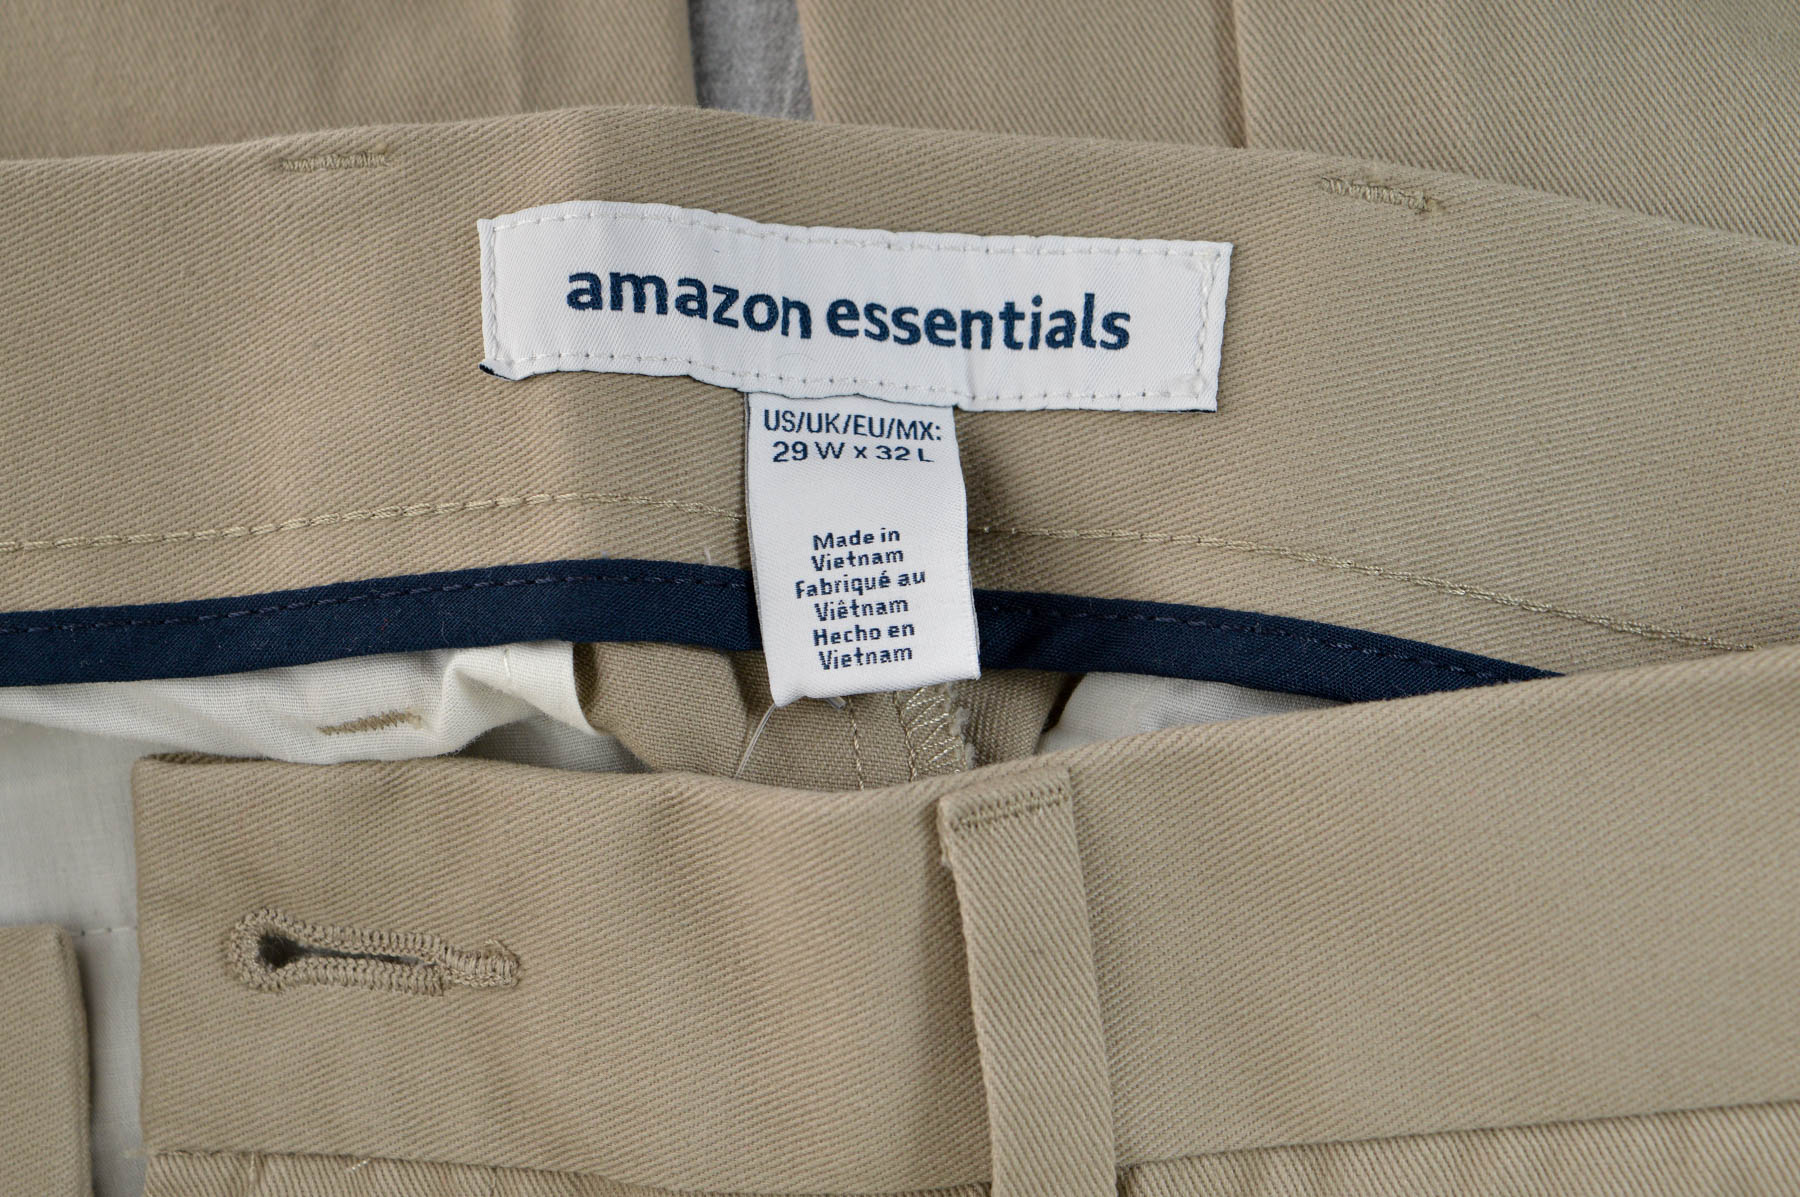 Pantalon pentru bărbați - Amazon essentials - 2